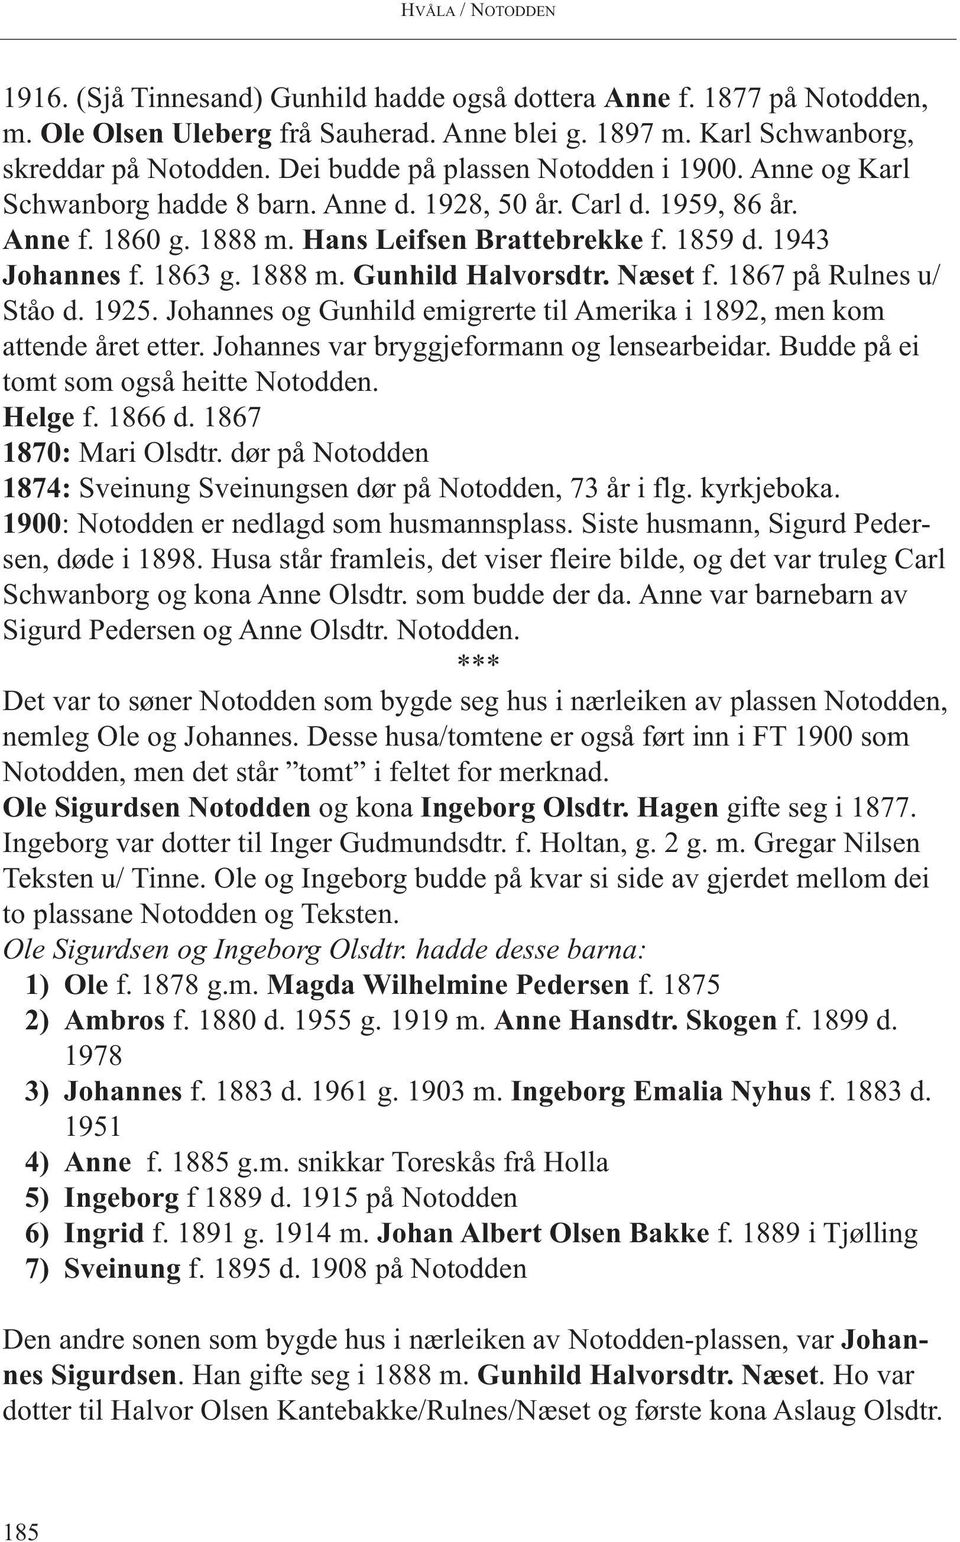 1863 g. 1888 m. Gunhild Halvorsdtr. Næset f. 1867 på Rulnes u/ Ståo d. 1925. Johannes og Gunhild emigrerte til Amerika i 1892, men kom attende året etter. Johannes var bryggjeformann og lensearbeidar.